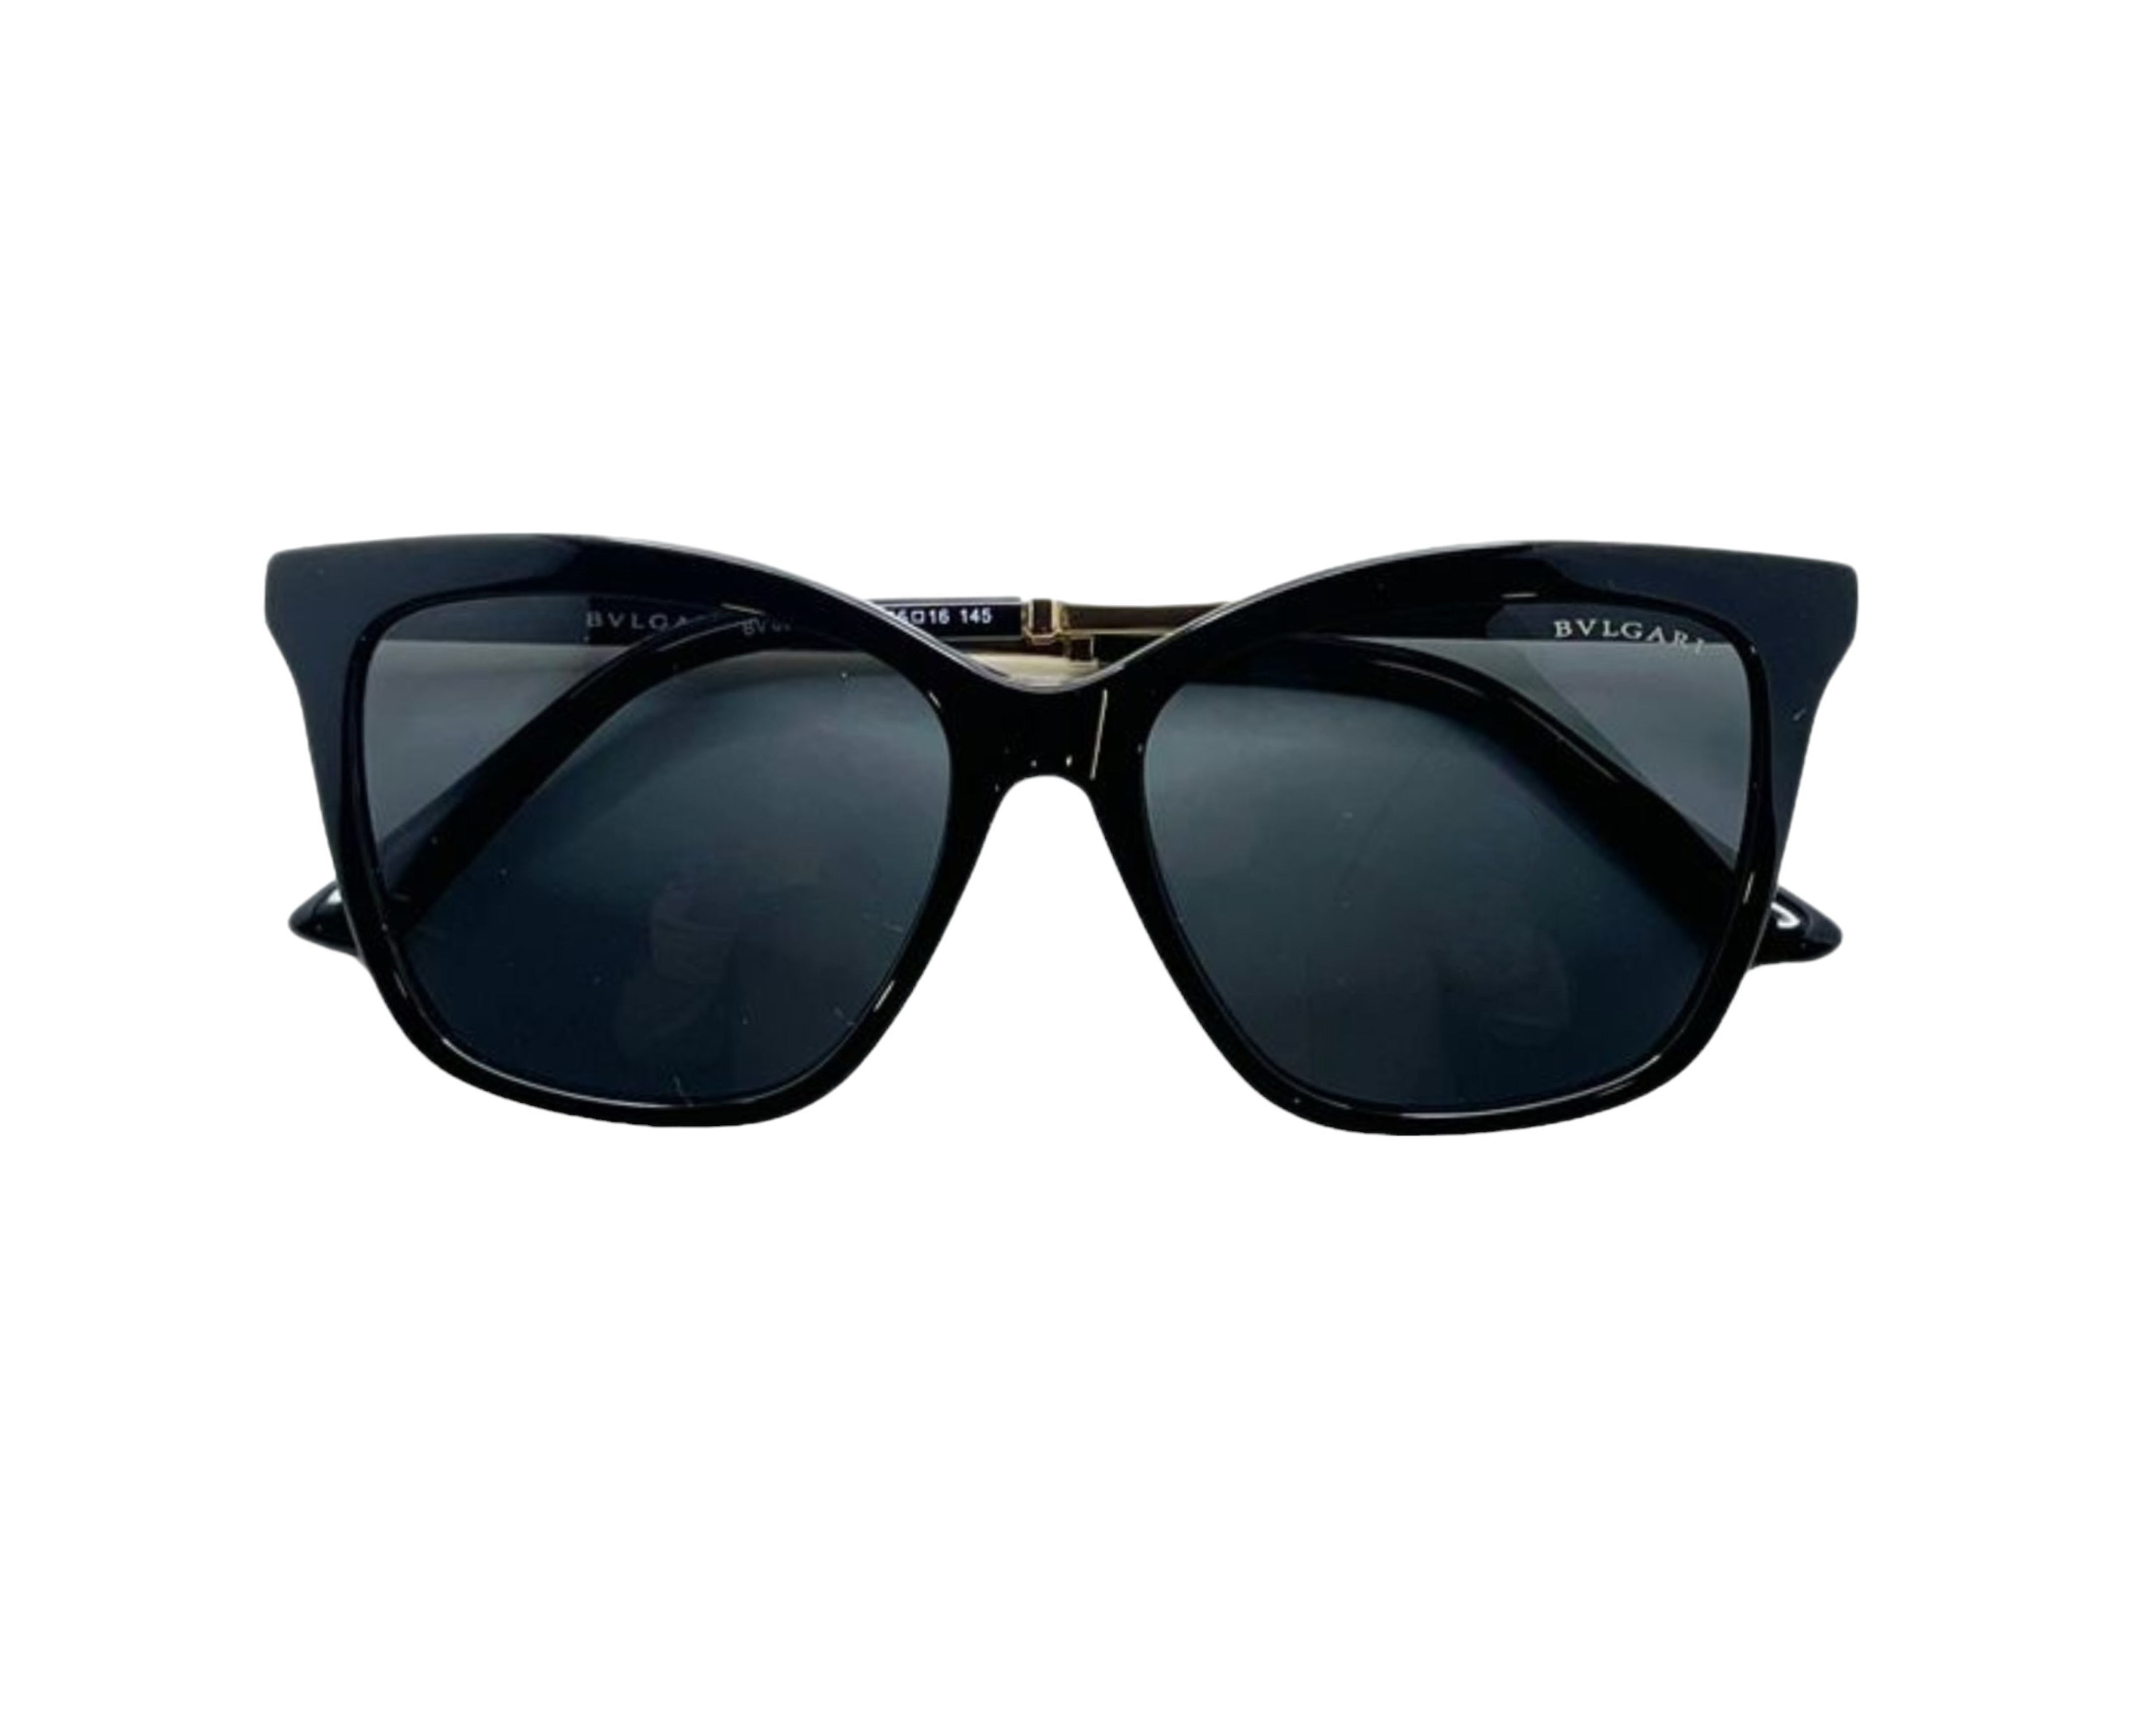 NS Luxury - 8257 - Black - Sunglasses